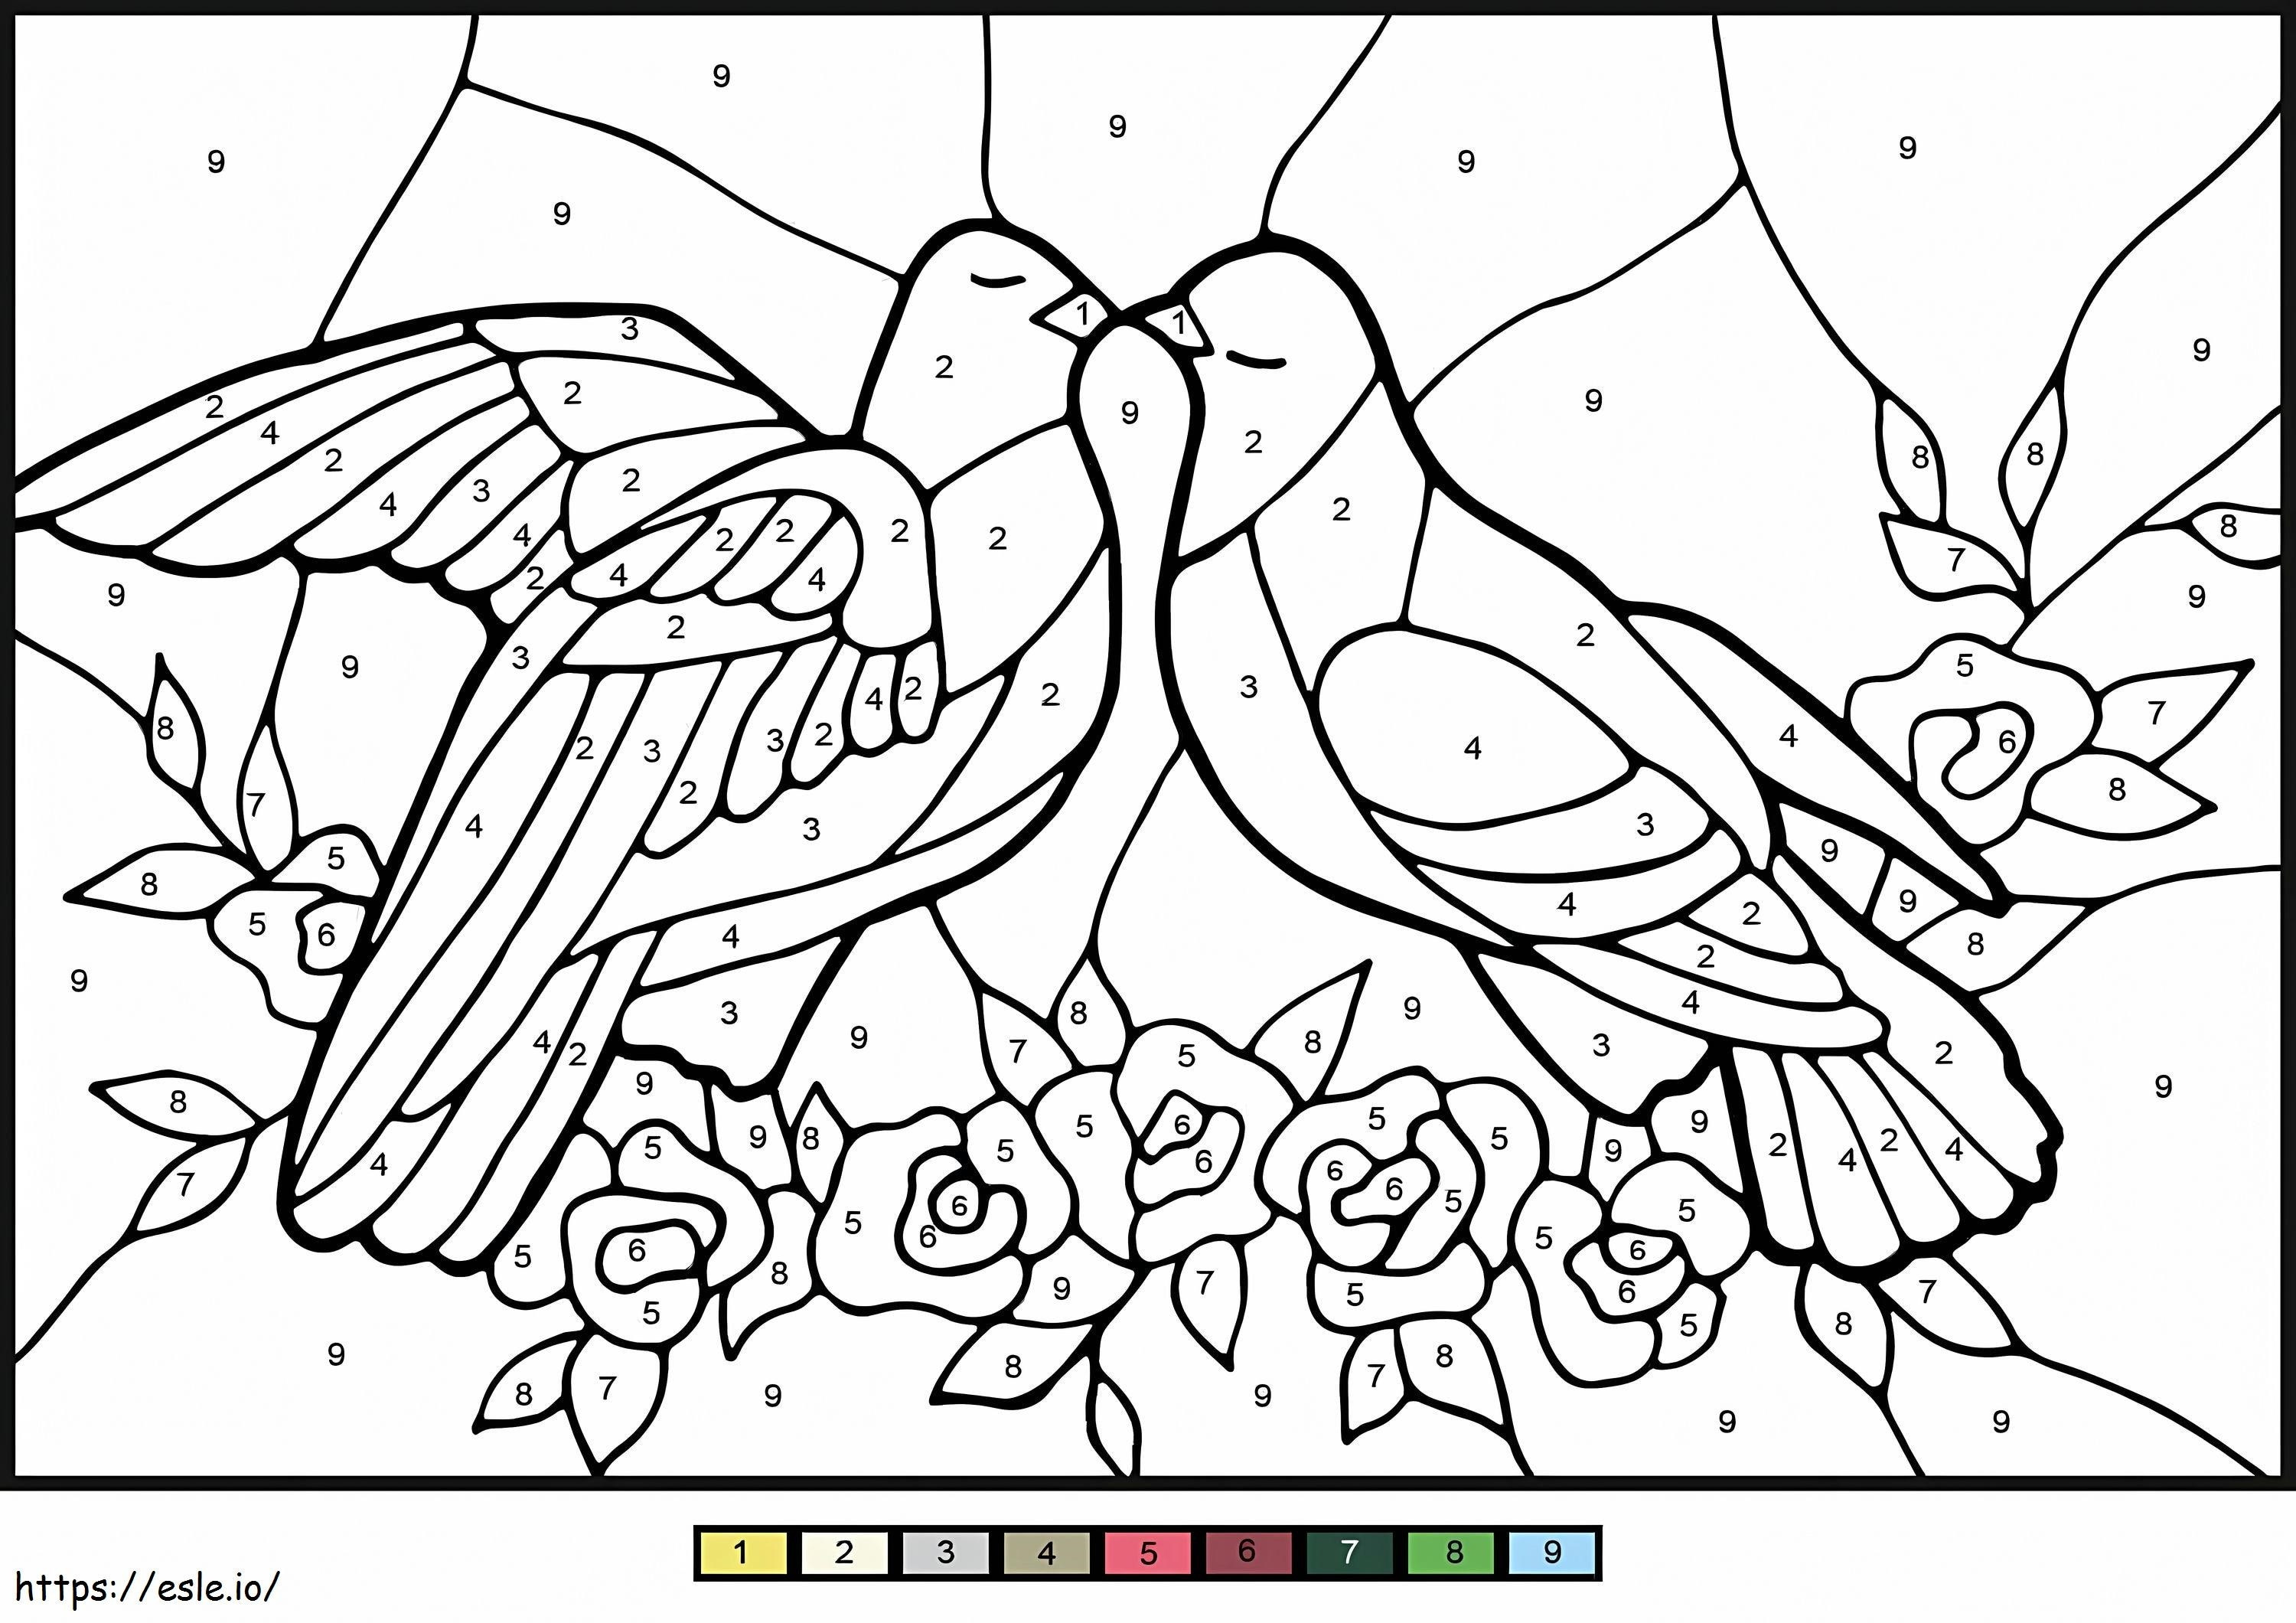 Tauben färben nach Zahlen ausmalbilder